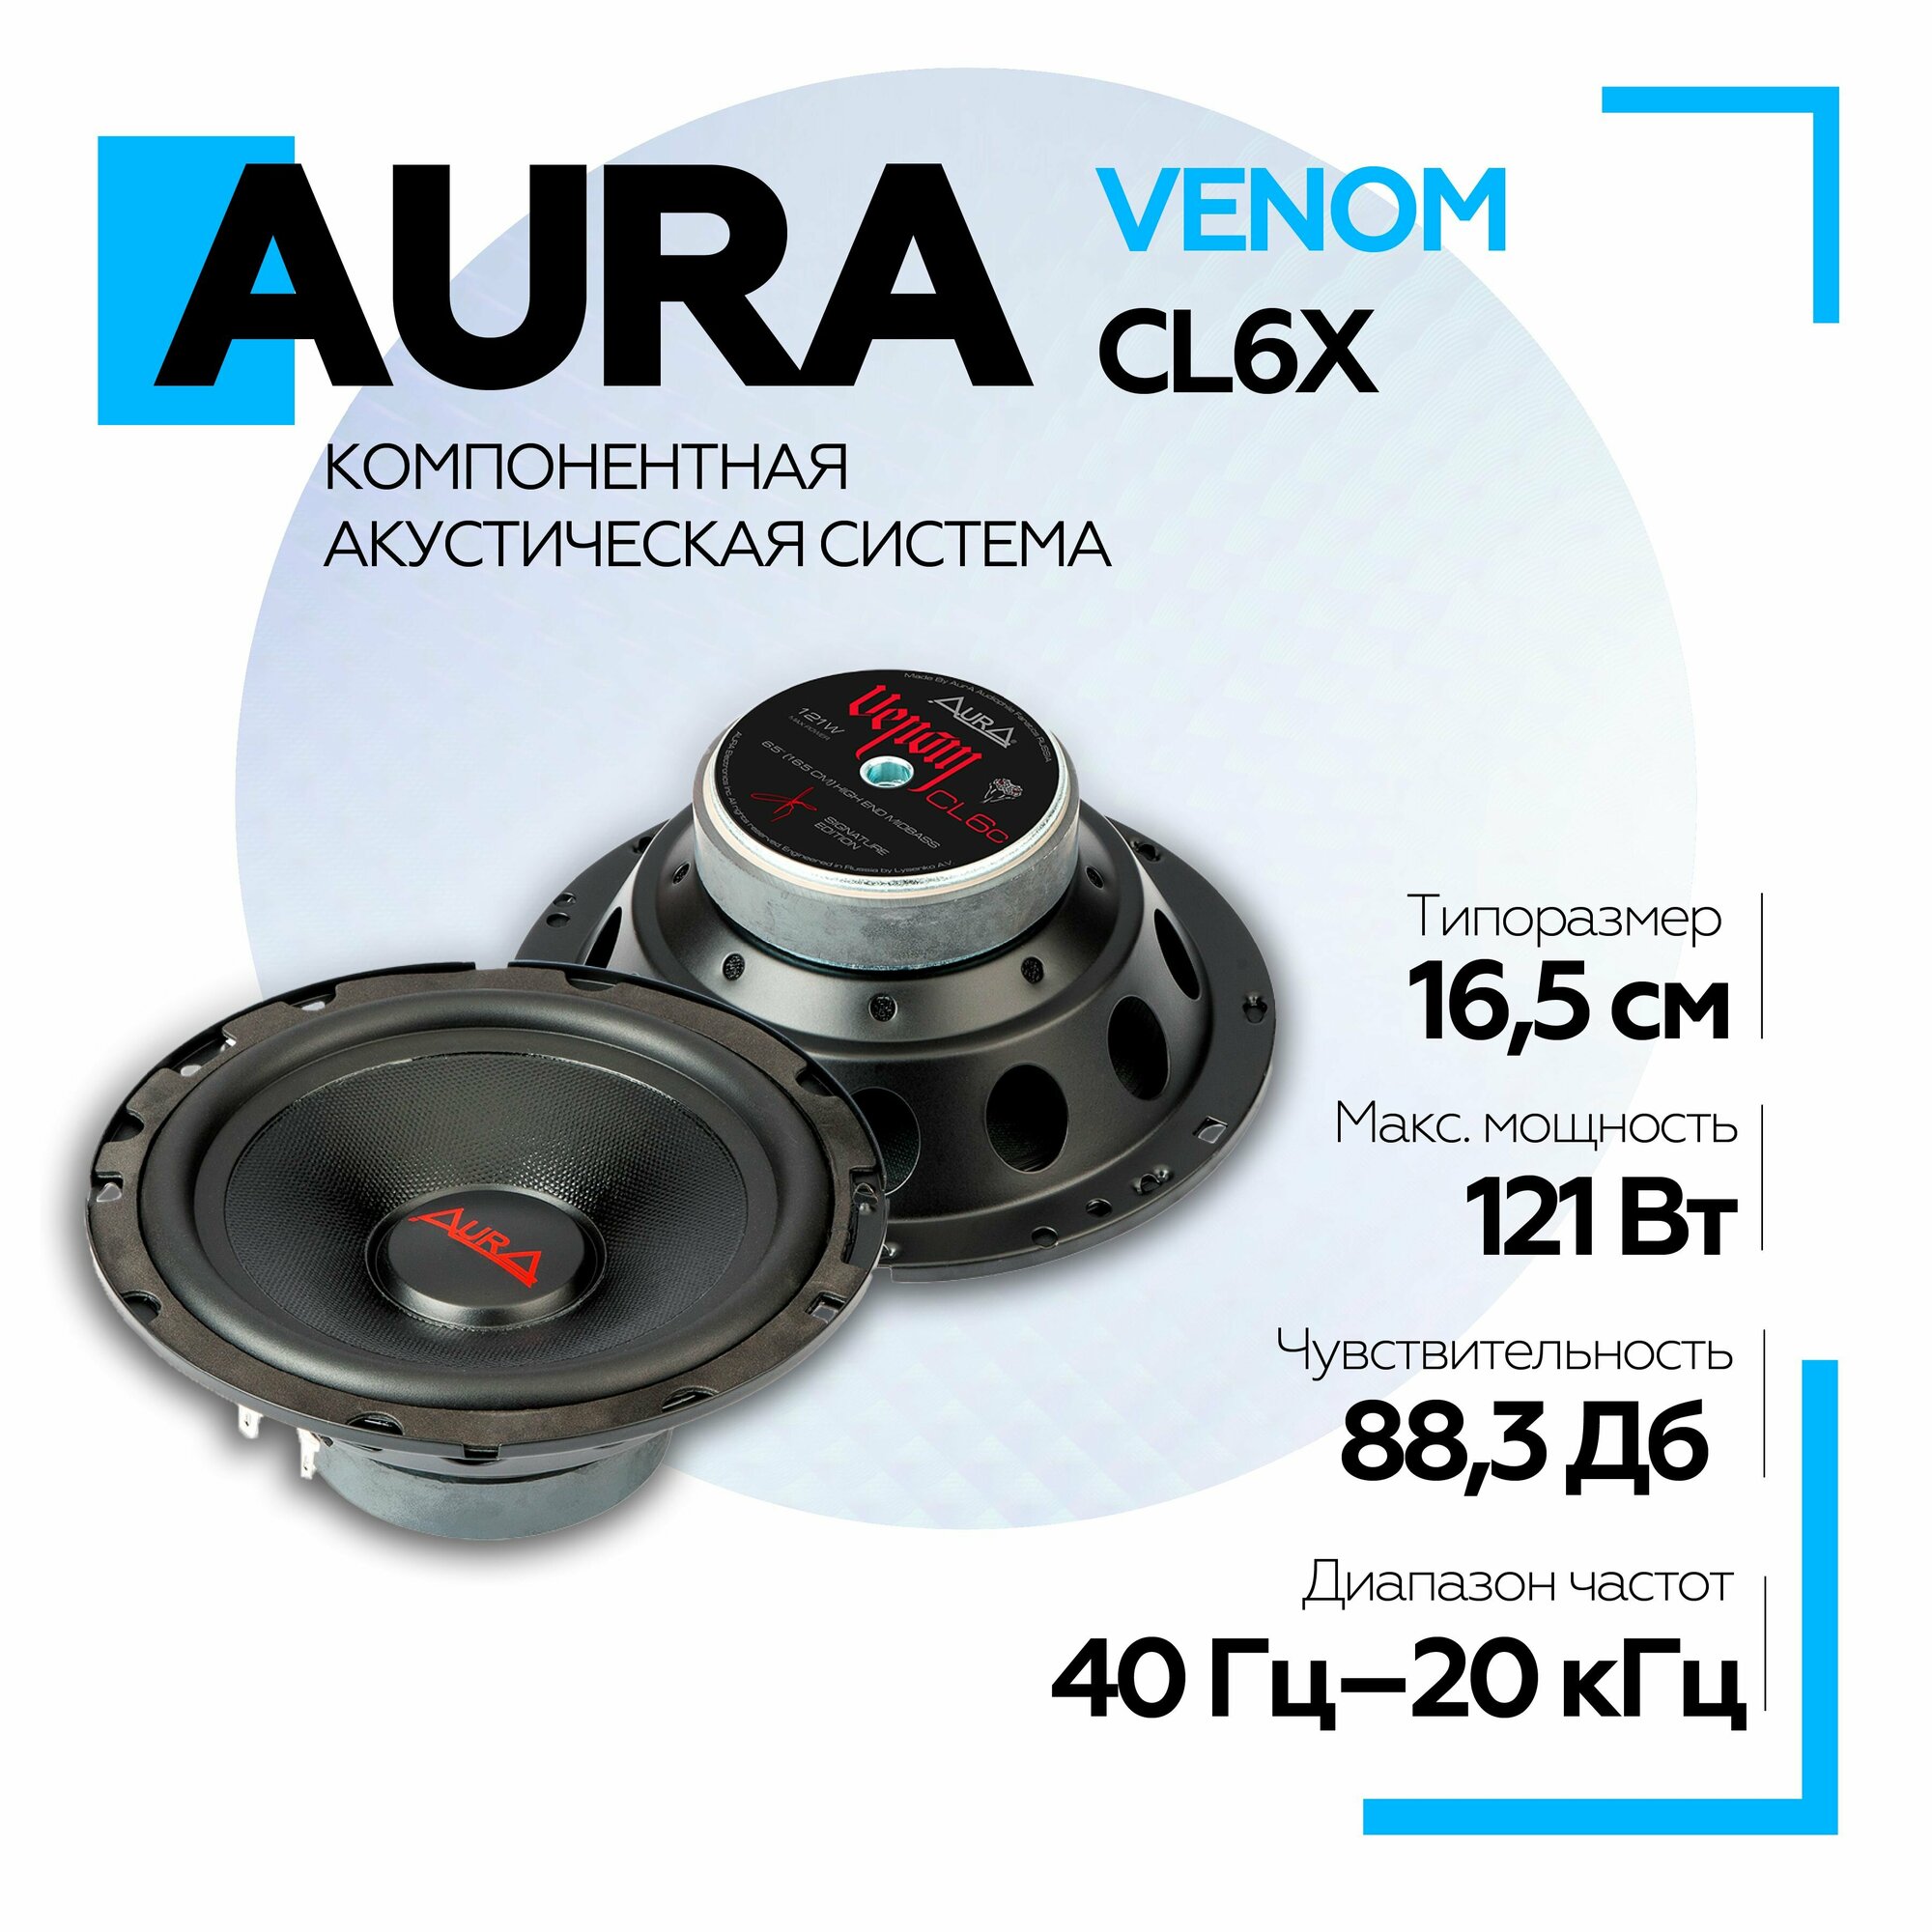 Акустическая система Aura Venom-CL6x